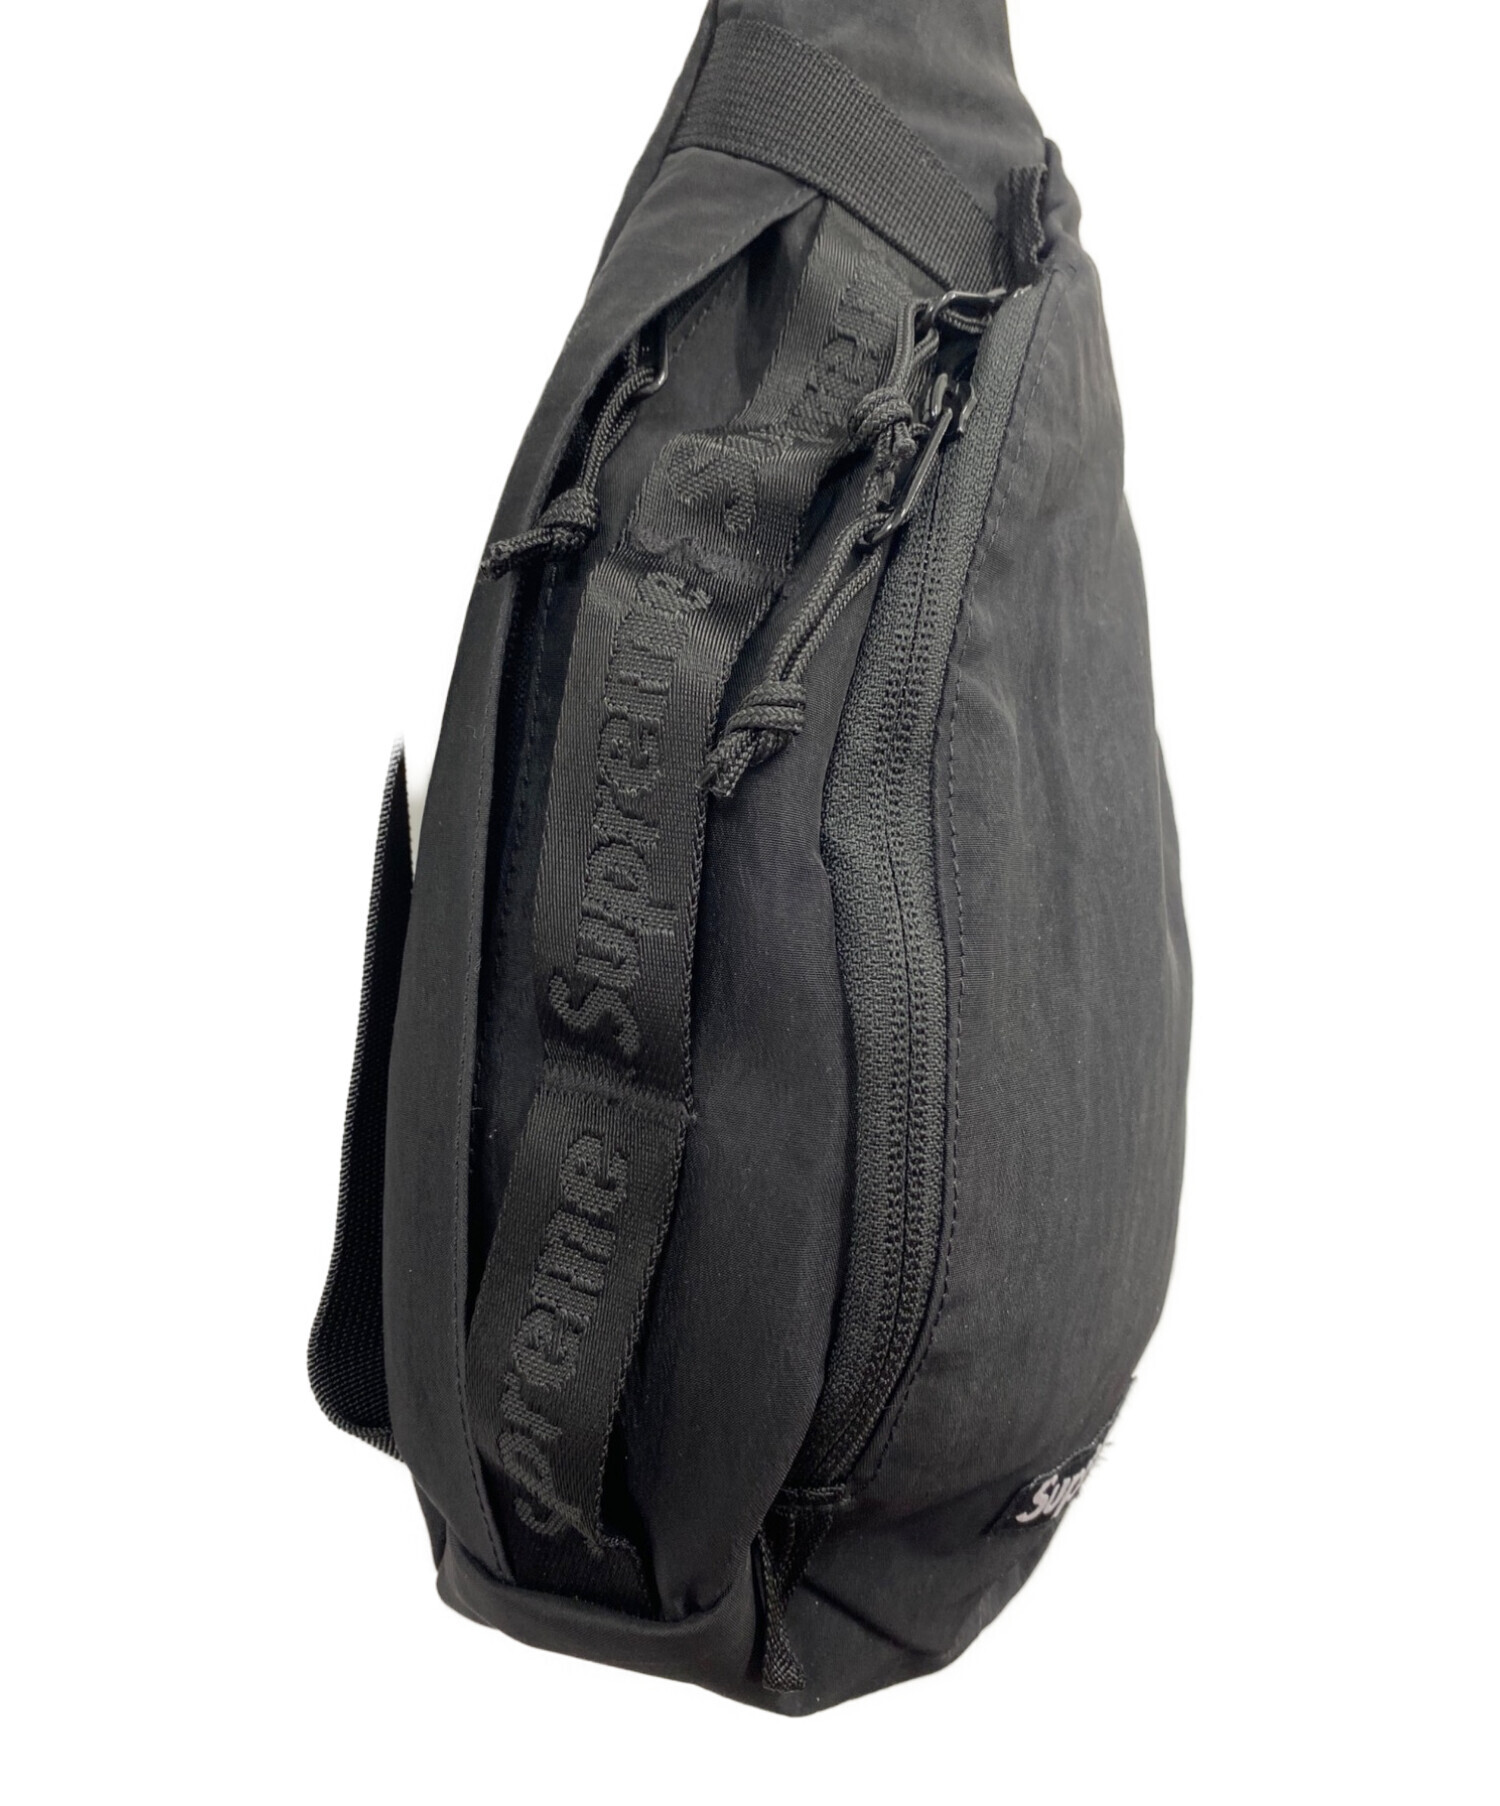 SUPREME (シュプリーム) 20AW sling bag スリングバッグ ワンショルダーバッグ ブラック